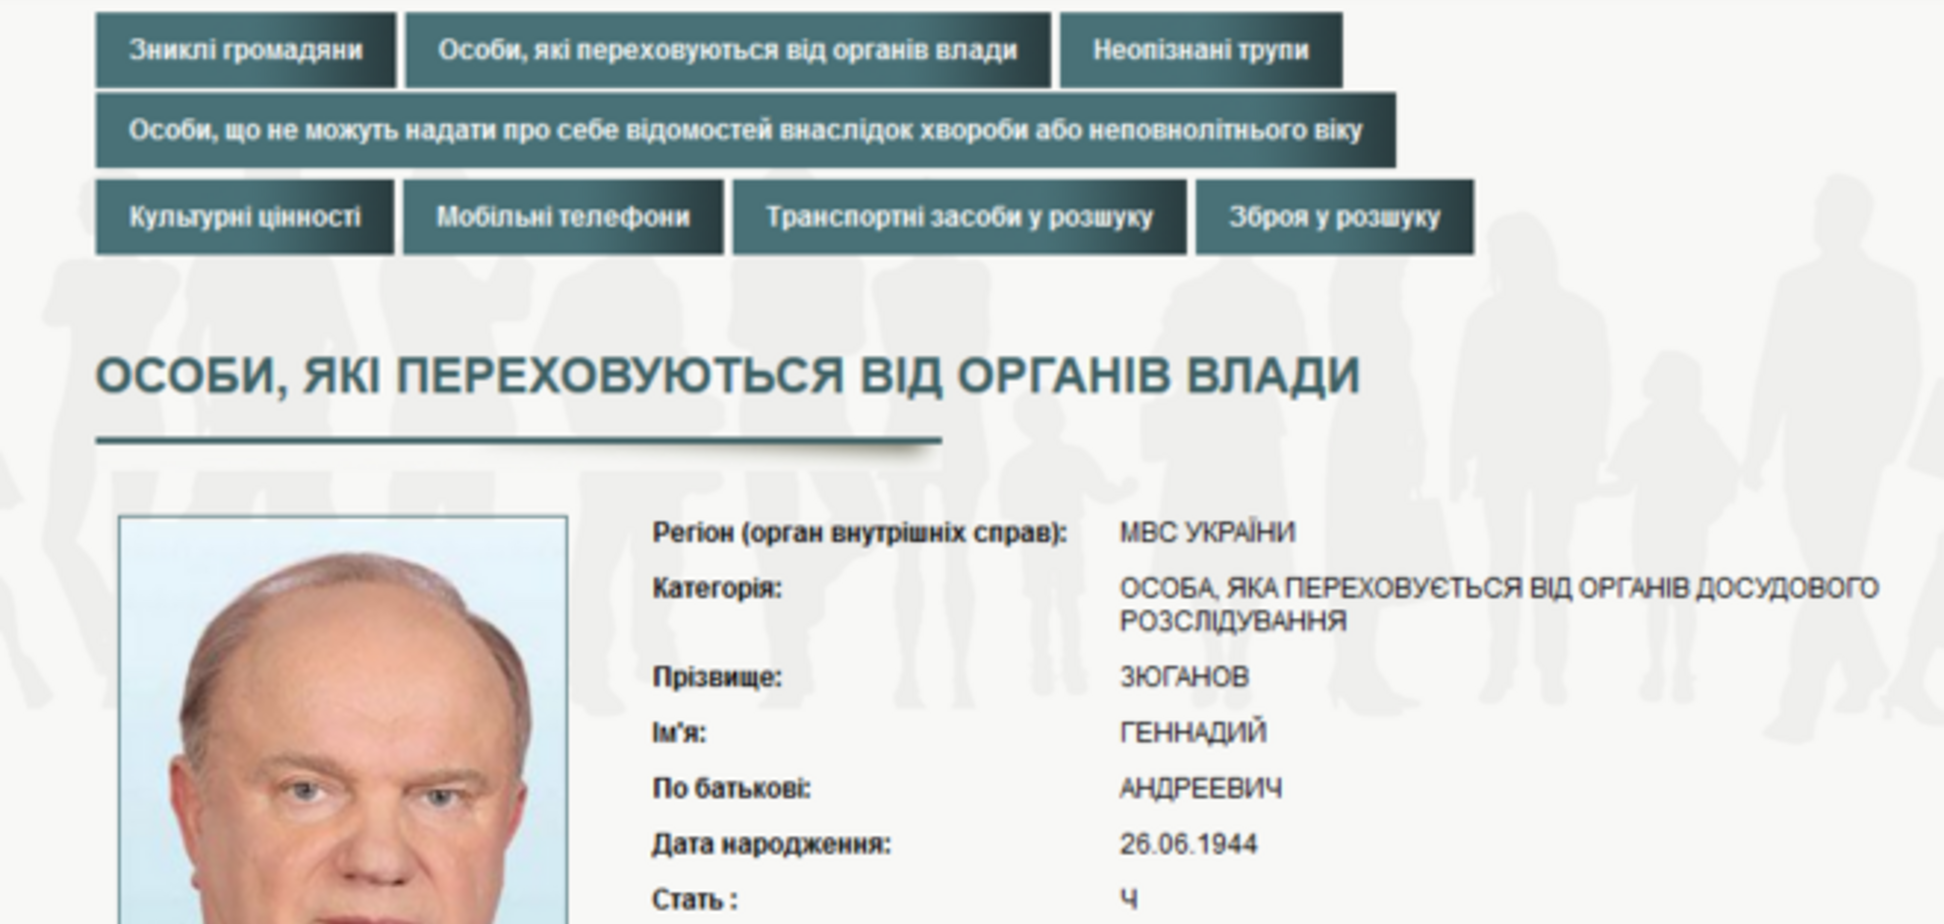 МВС України оголосило в розшук Жириновського, Миронова і Зюганова